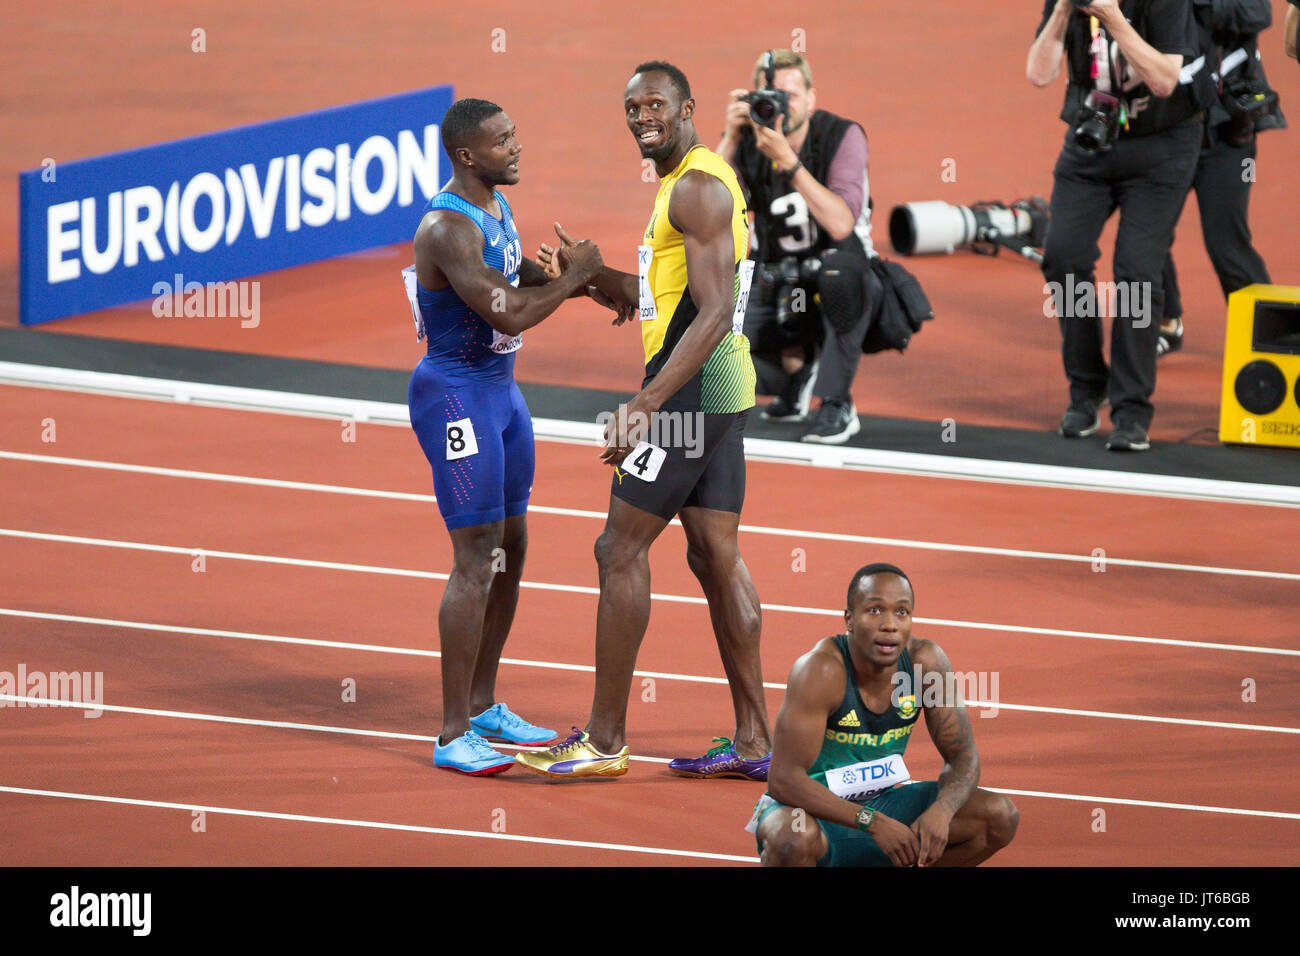 Londres, Inglaterra - 05 de agosto: Usain Bolt y Justin Gatlin (parte superior azul) después de la final masculina de los 100 metros durante el día dos de los 17 Campeonatos Mundiales de Atletismo de la IAAF de Londres 2017 en el estadio de Londres el 5 de agosto de 2017 en Londres, Reino Unido.Justin Gatlin de los Estados Unidos ganó la carrera. Foto de stock